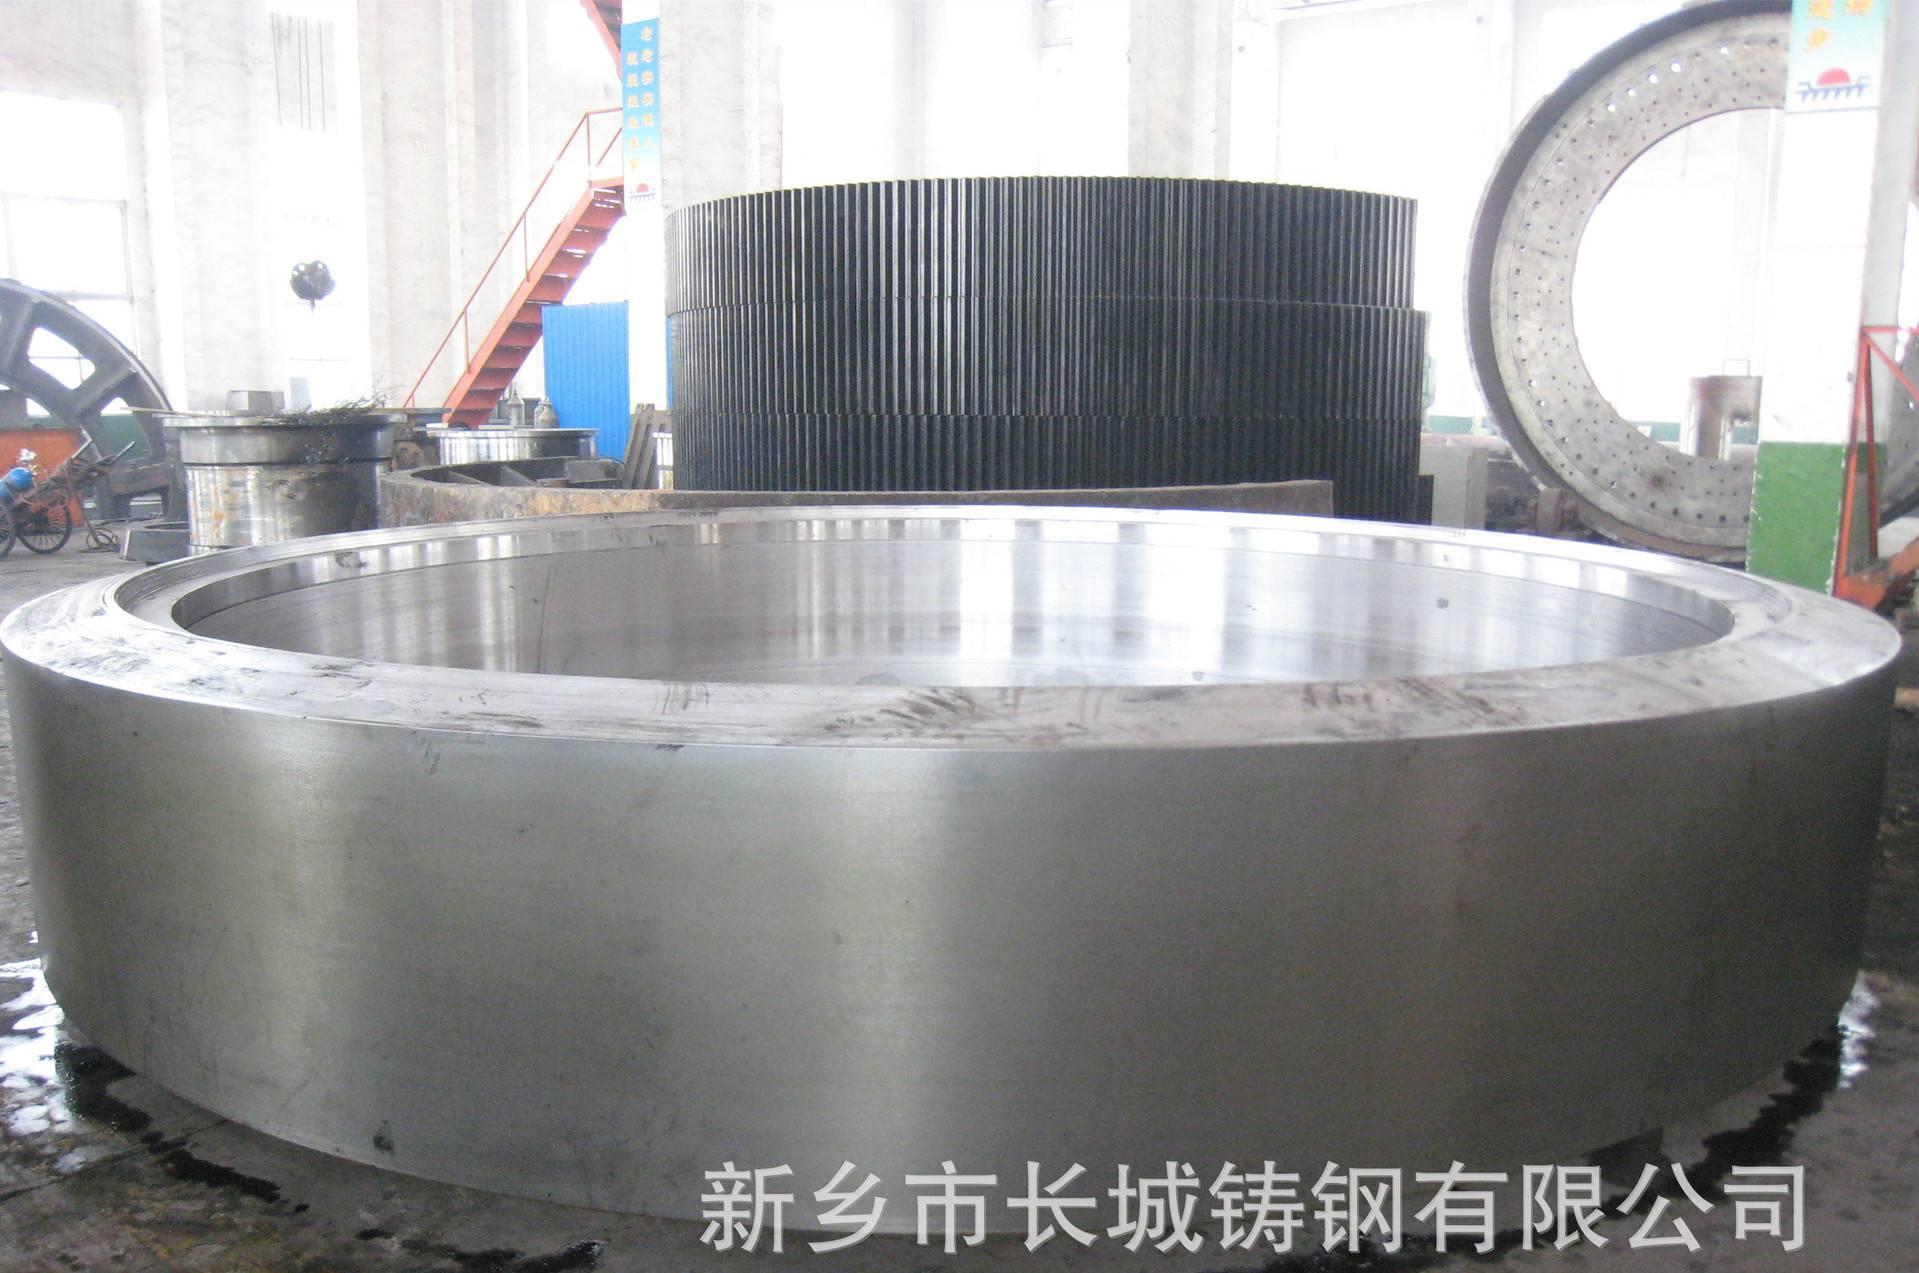 河南铸件厂提供大型铸钢件加工 烘干机铸钢滚圈铸钢件定制加工示例图1